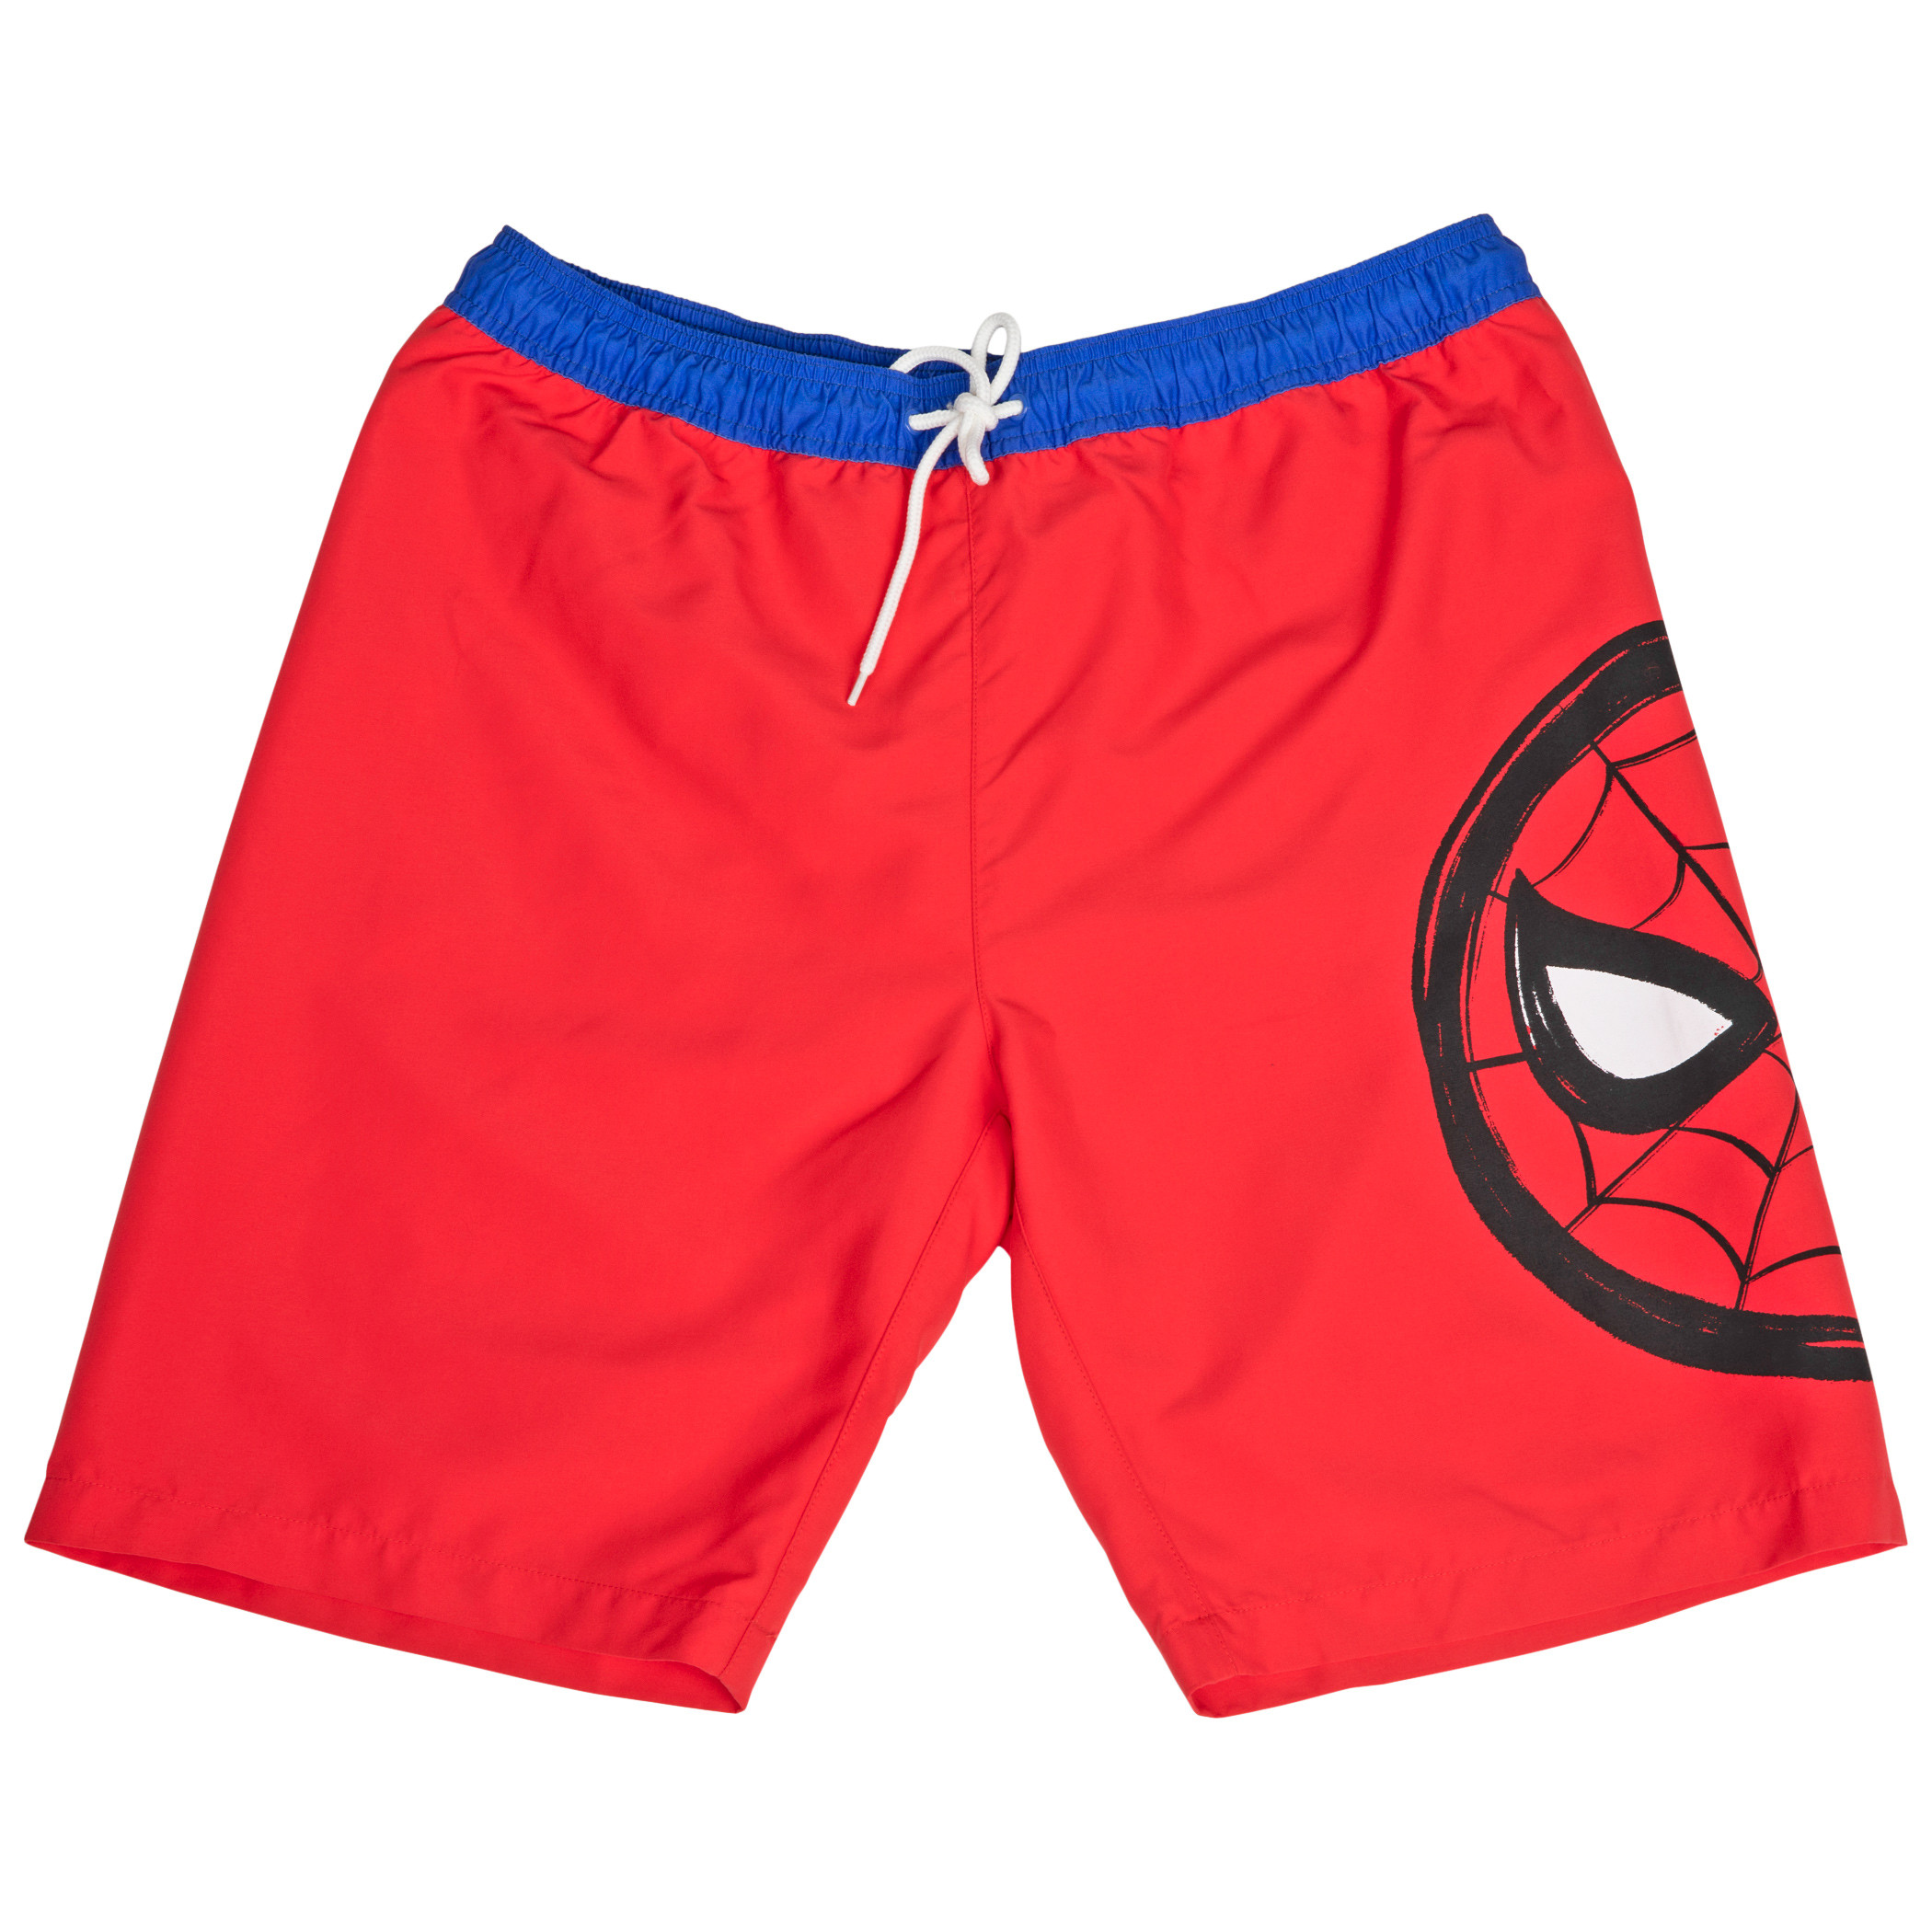 Spider-Man Character Symbol Board Shorts